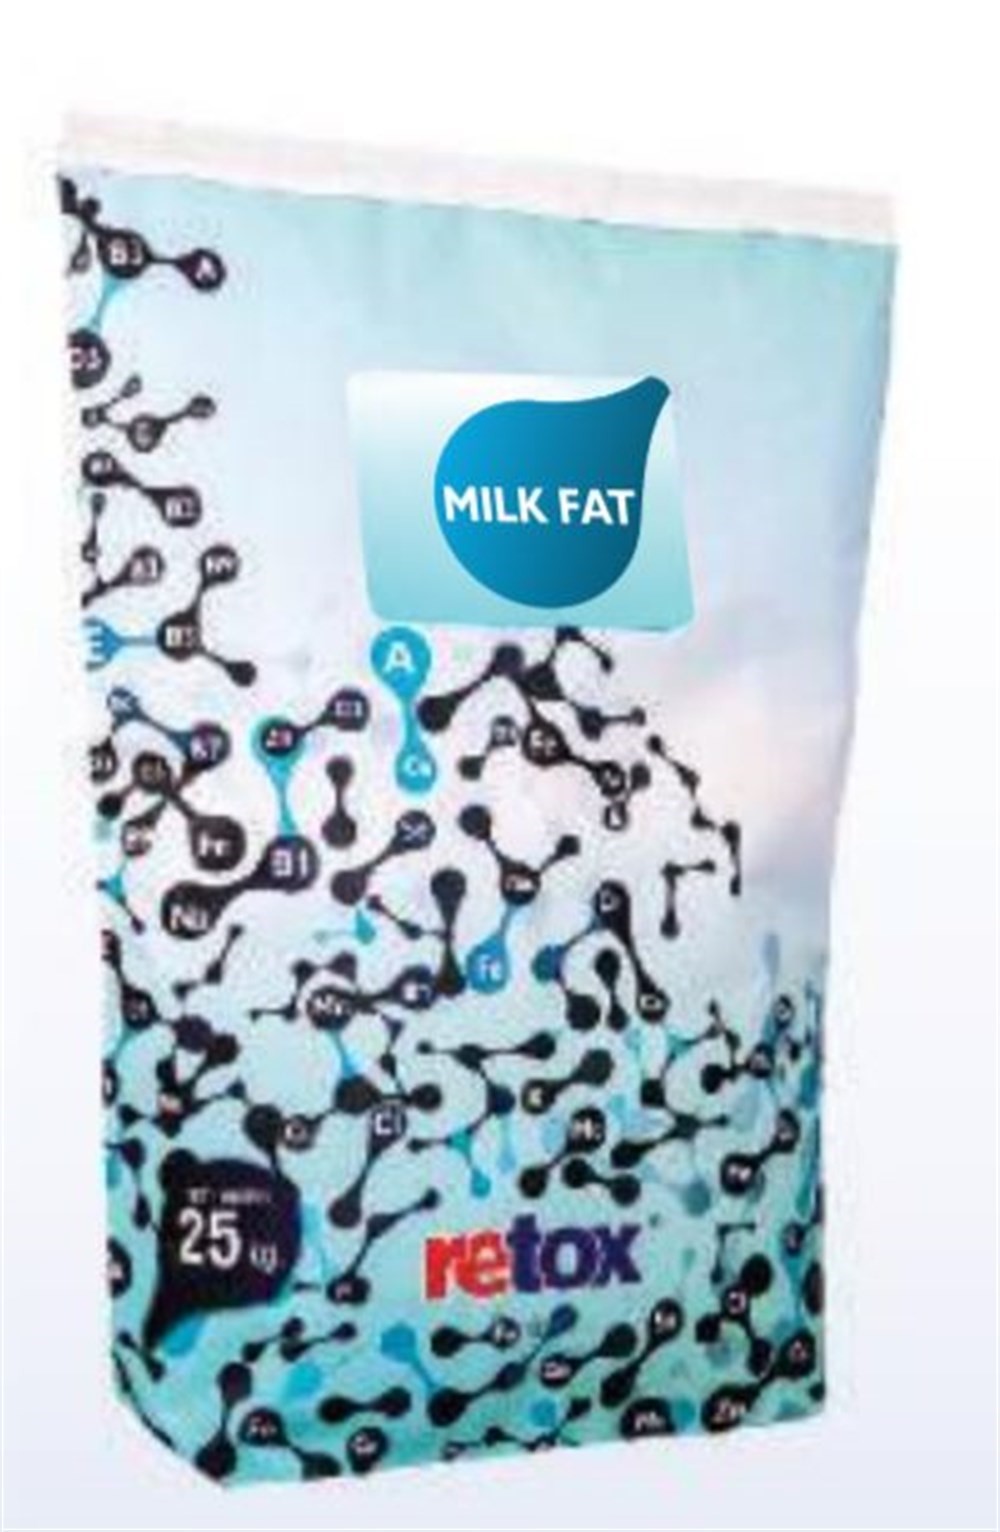 Retox Milk Fat-Süt Verimi Artırıcı Yem Katkı Maddesi